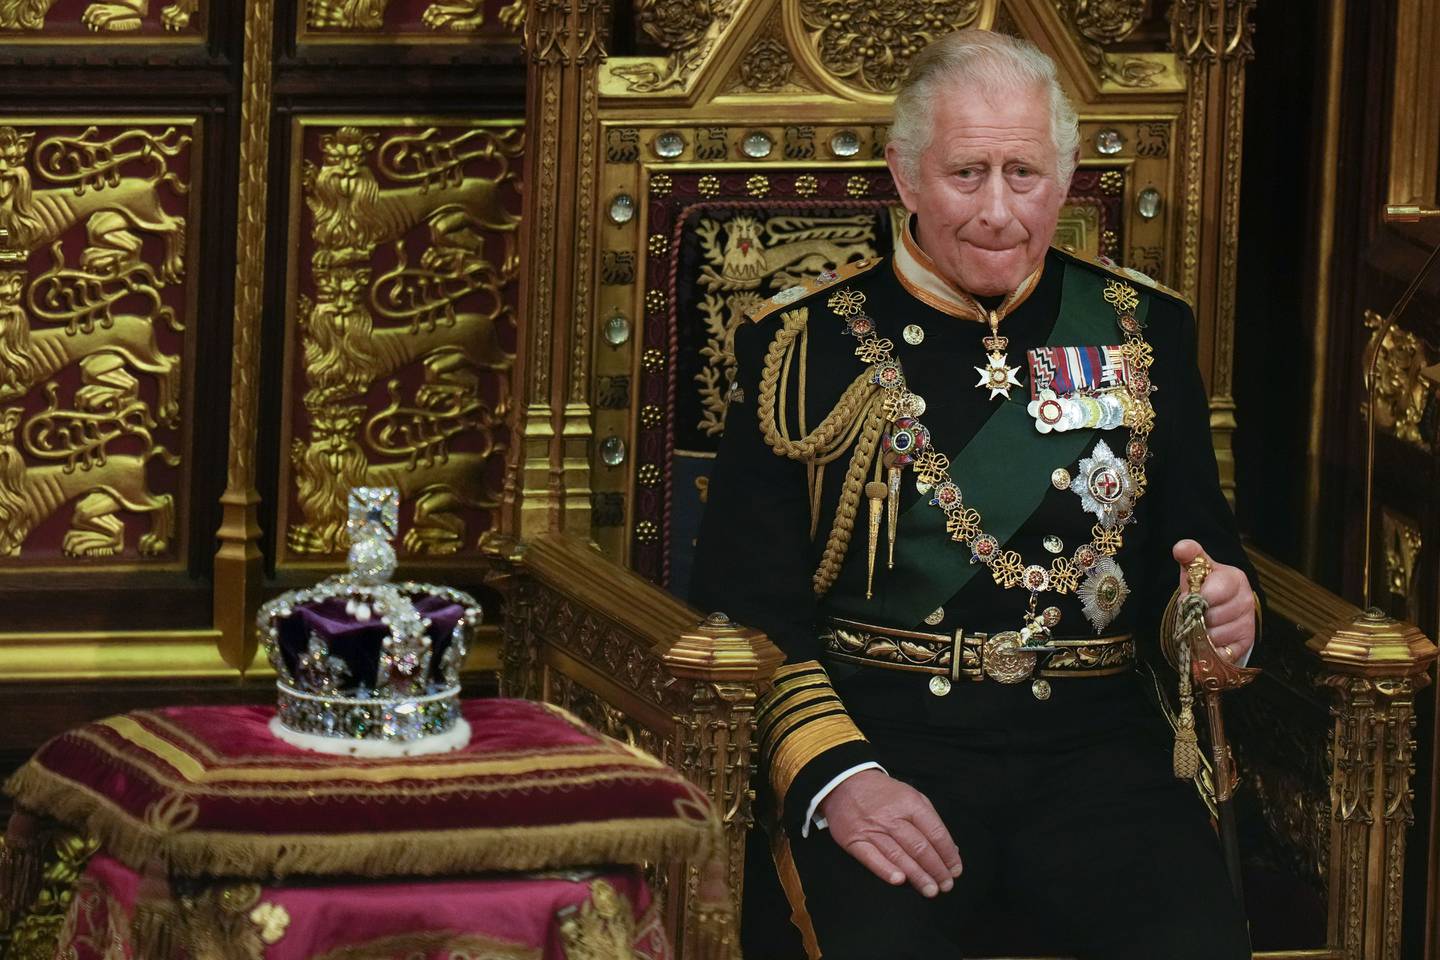 ARCHIVO - El príncipe Carlos sentado junto a la corona de la reina durante la apertura del Parlamento, en el Palacio de Westminster, en Londres, el 10 de mayo de 2022. (AP Foto/Alastair Grant, Pool, Archivo)